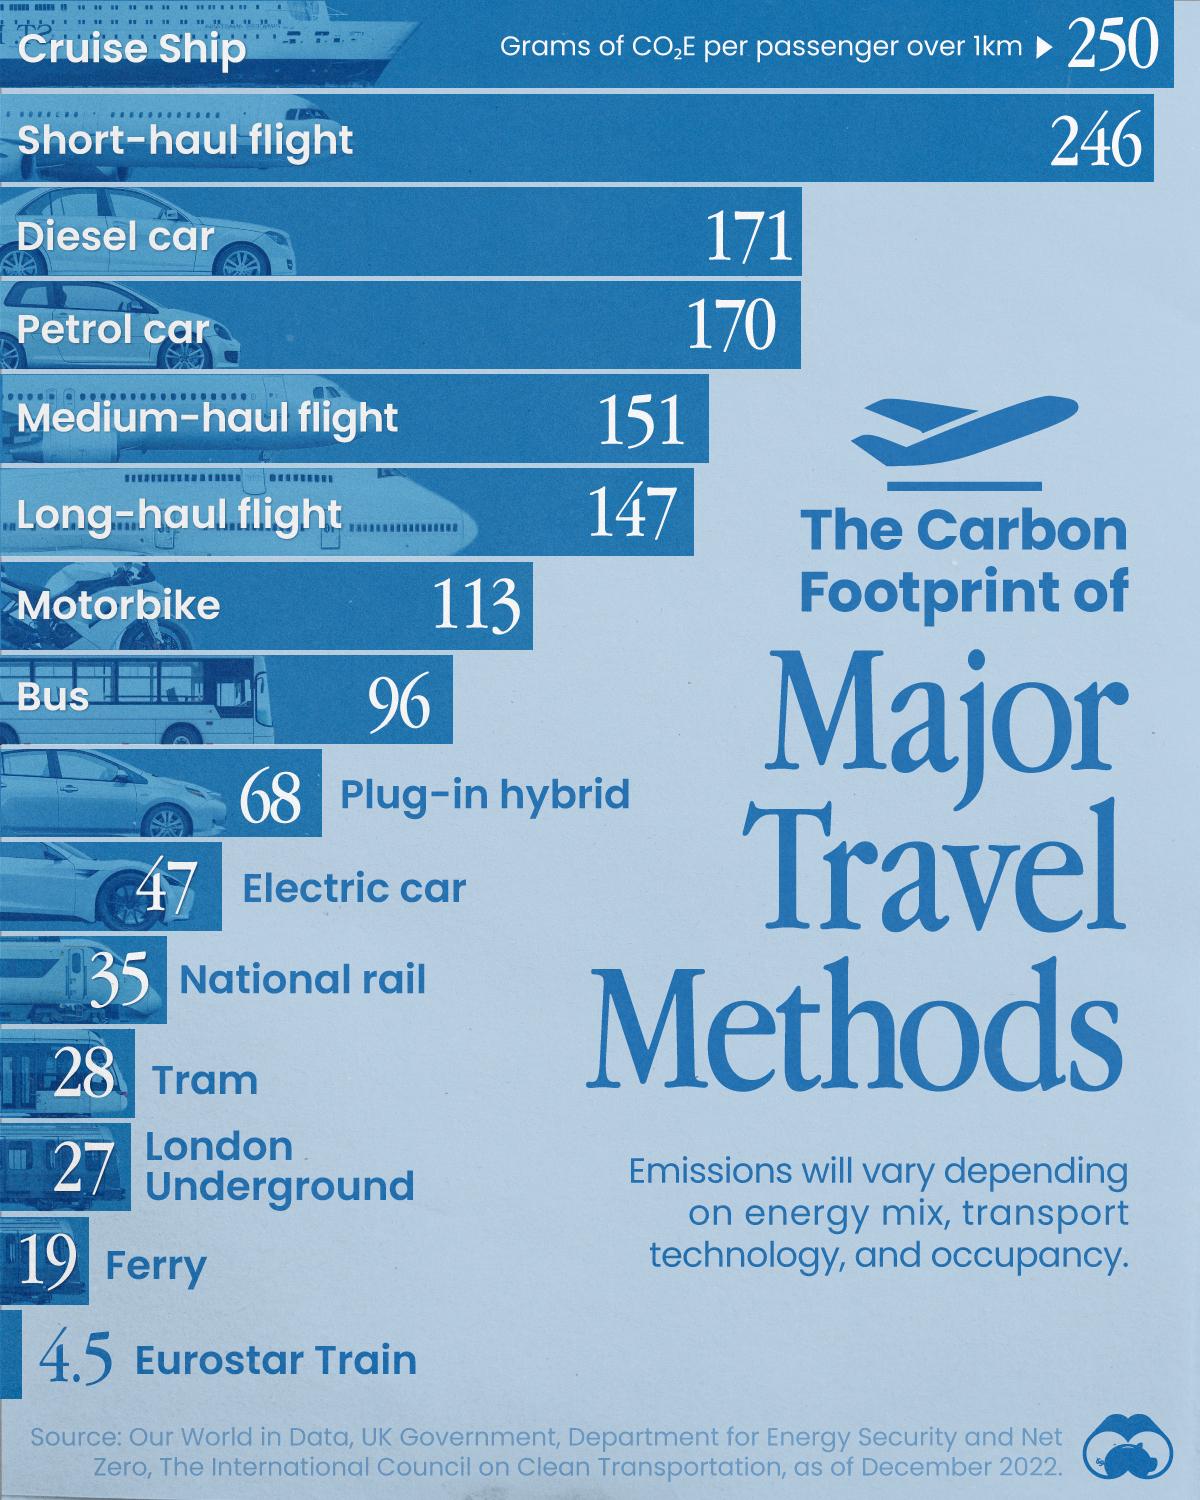 Круизные лайнеры — самый углеродоемкий способ путешествия